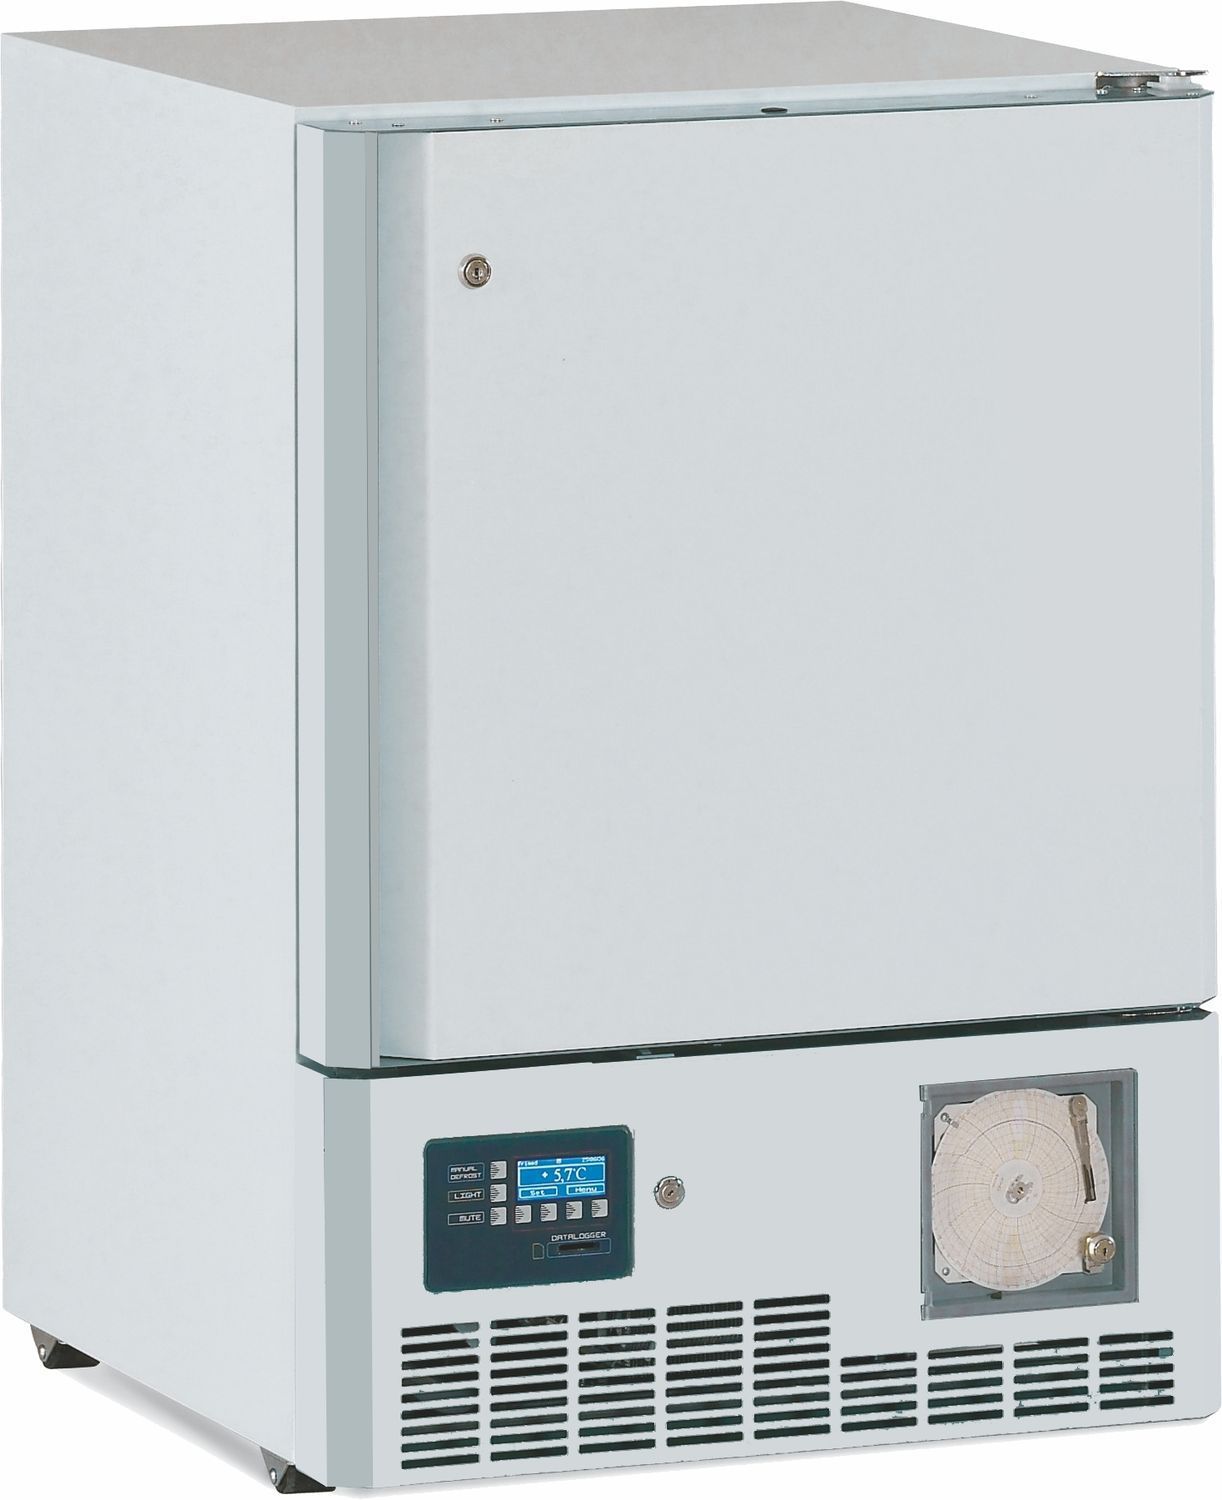 Laboratory freezer / built-in / 1-door -20°C, 100L | DS-SB10B Desmon Spa